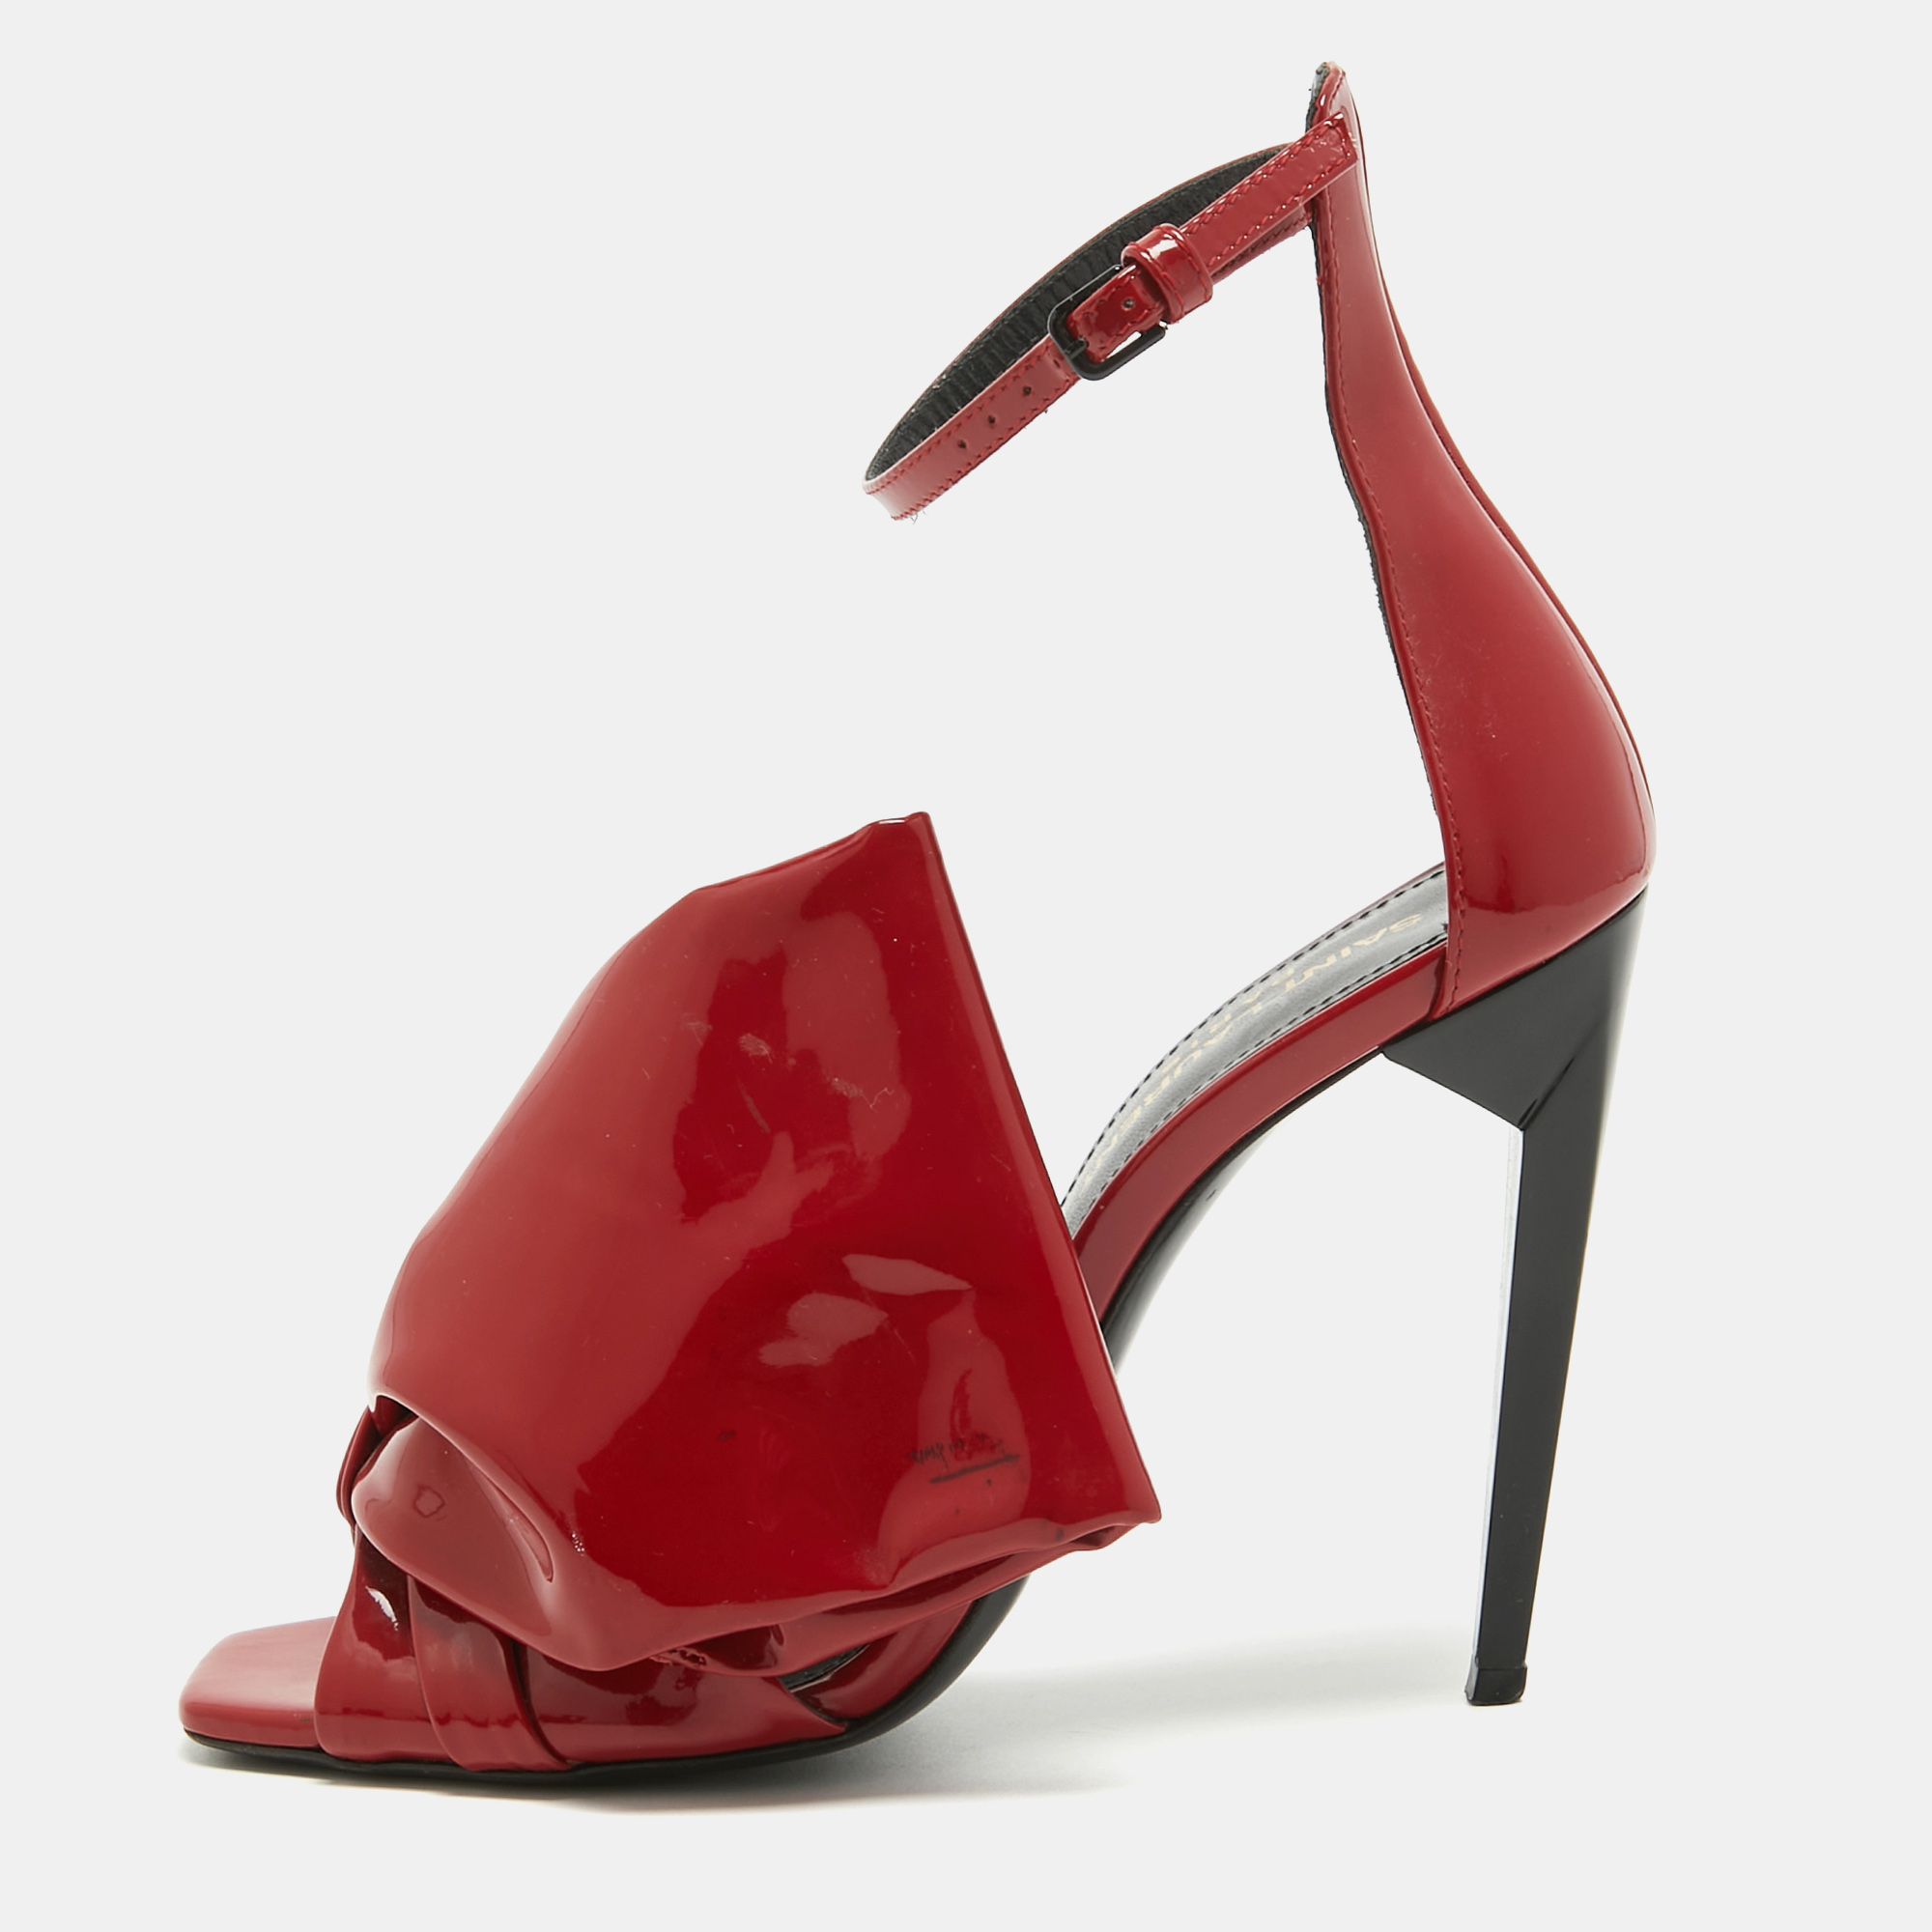 Saint laurent paris saint laurent red patent leather freja bow sandals size 36